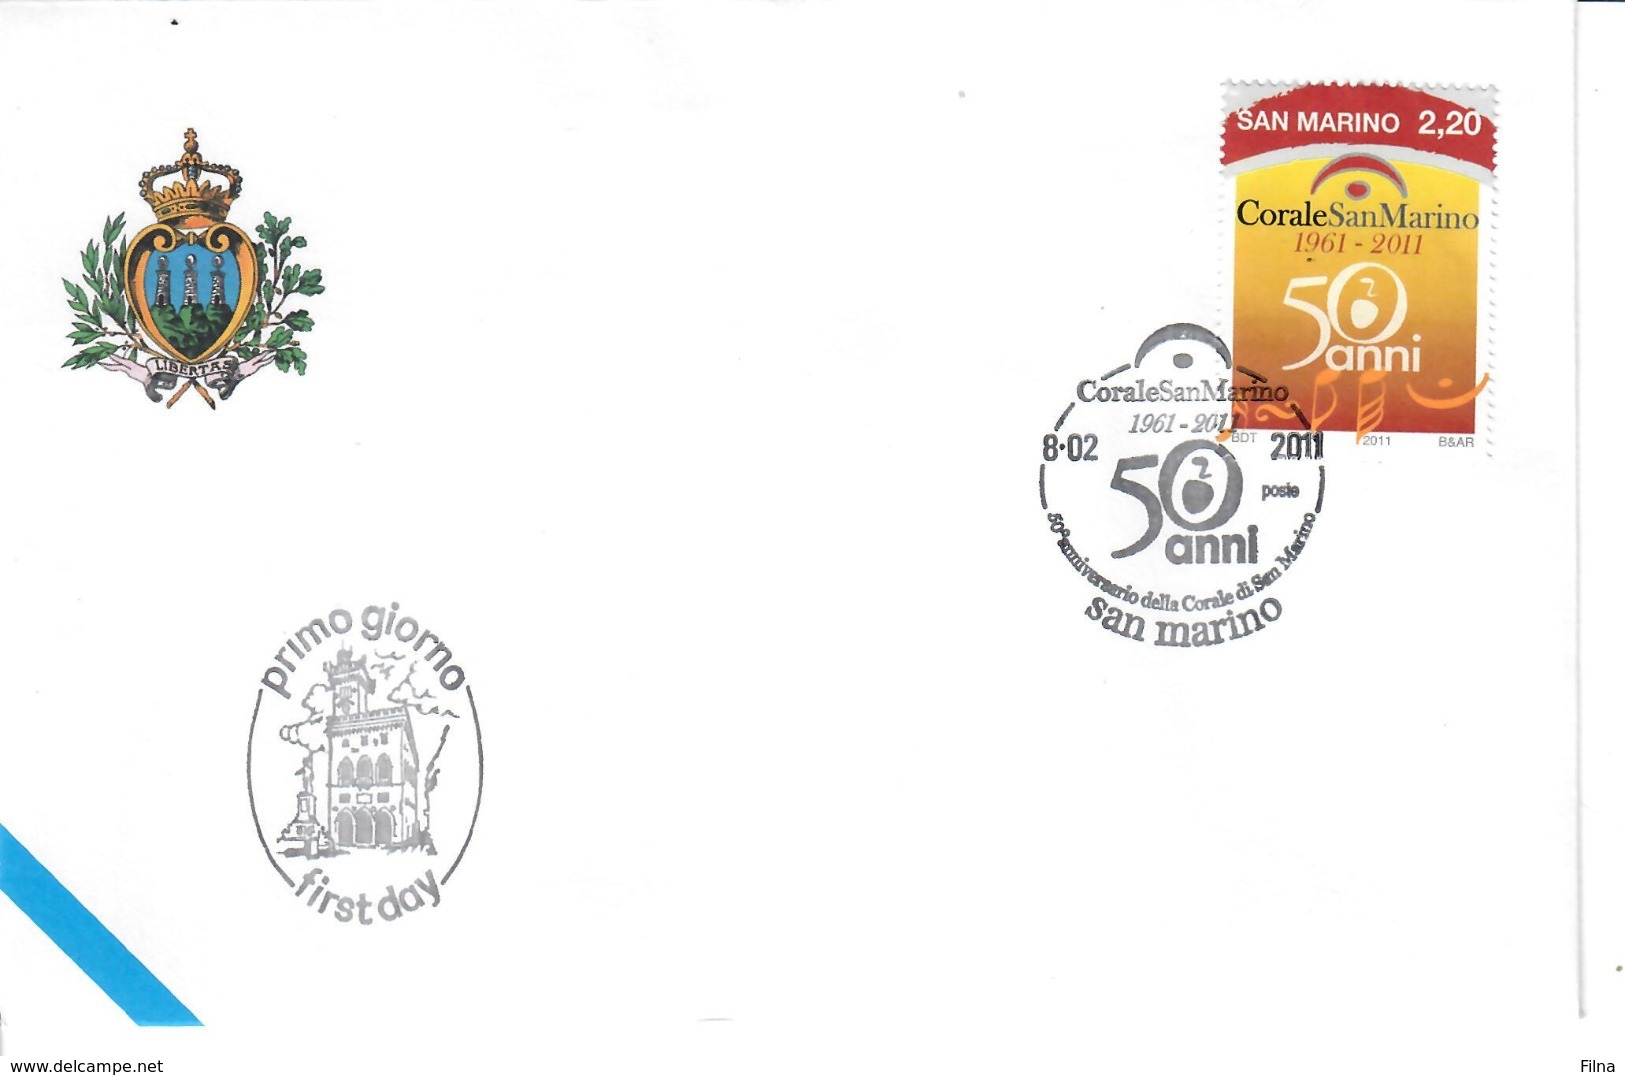 SAN MARINO 2011 - CORALE DI SAN MARINO - FDC - Used Stamps